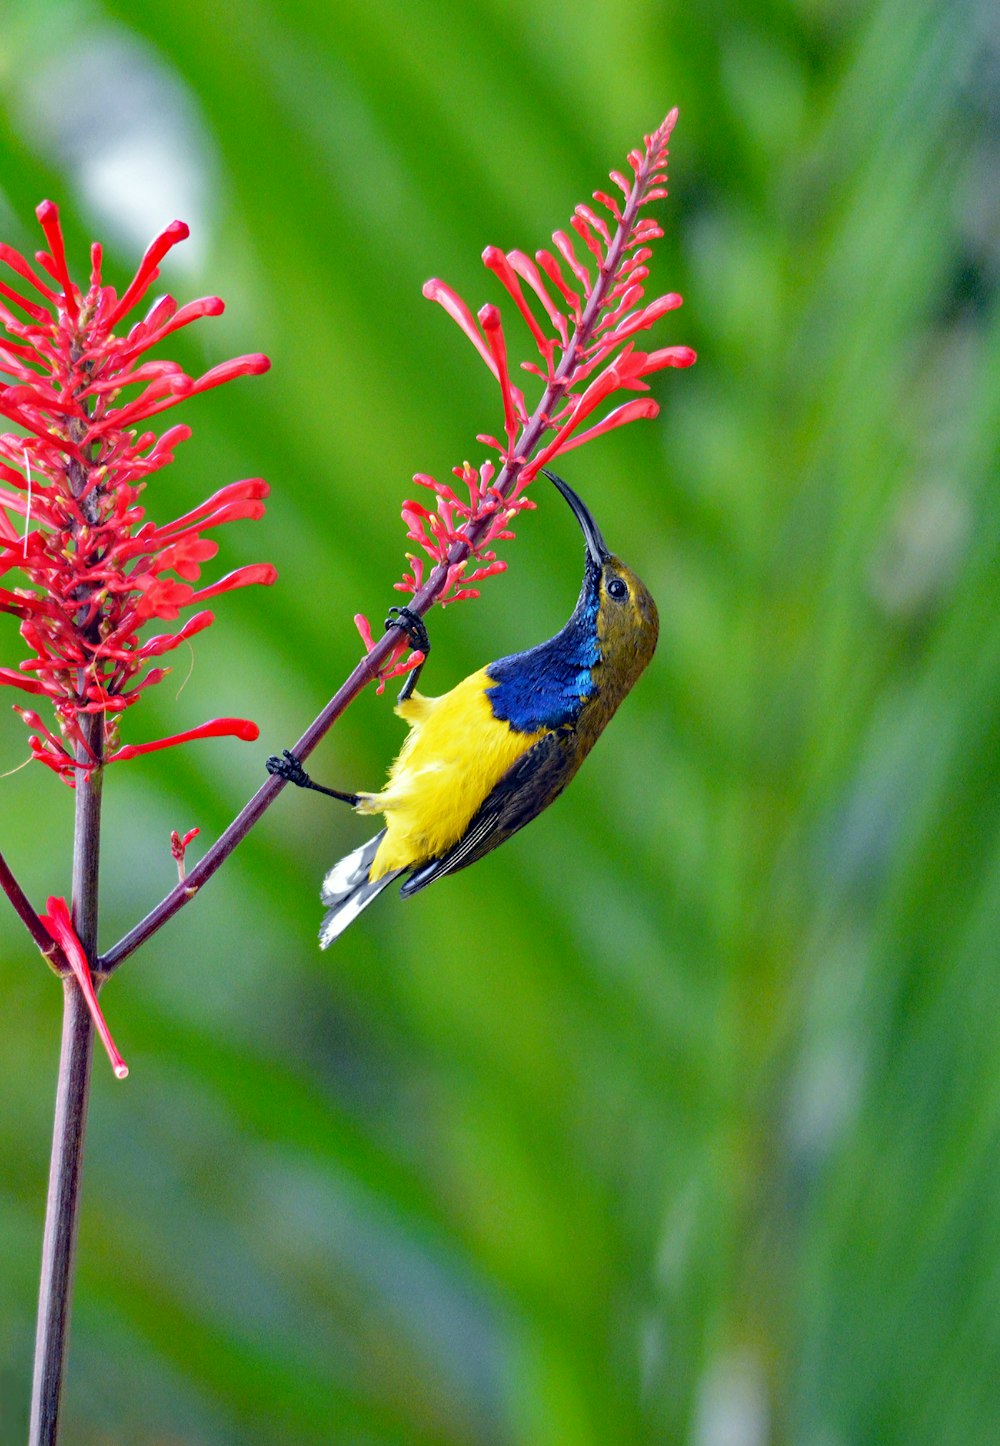 赤い花びらの花に茶色、青、黄色の長いくちばしを持つ鳥のマクロ撮影